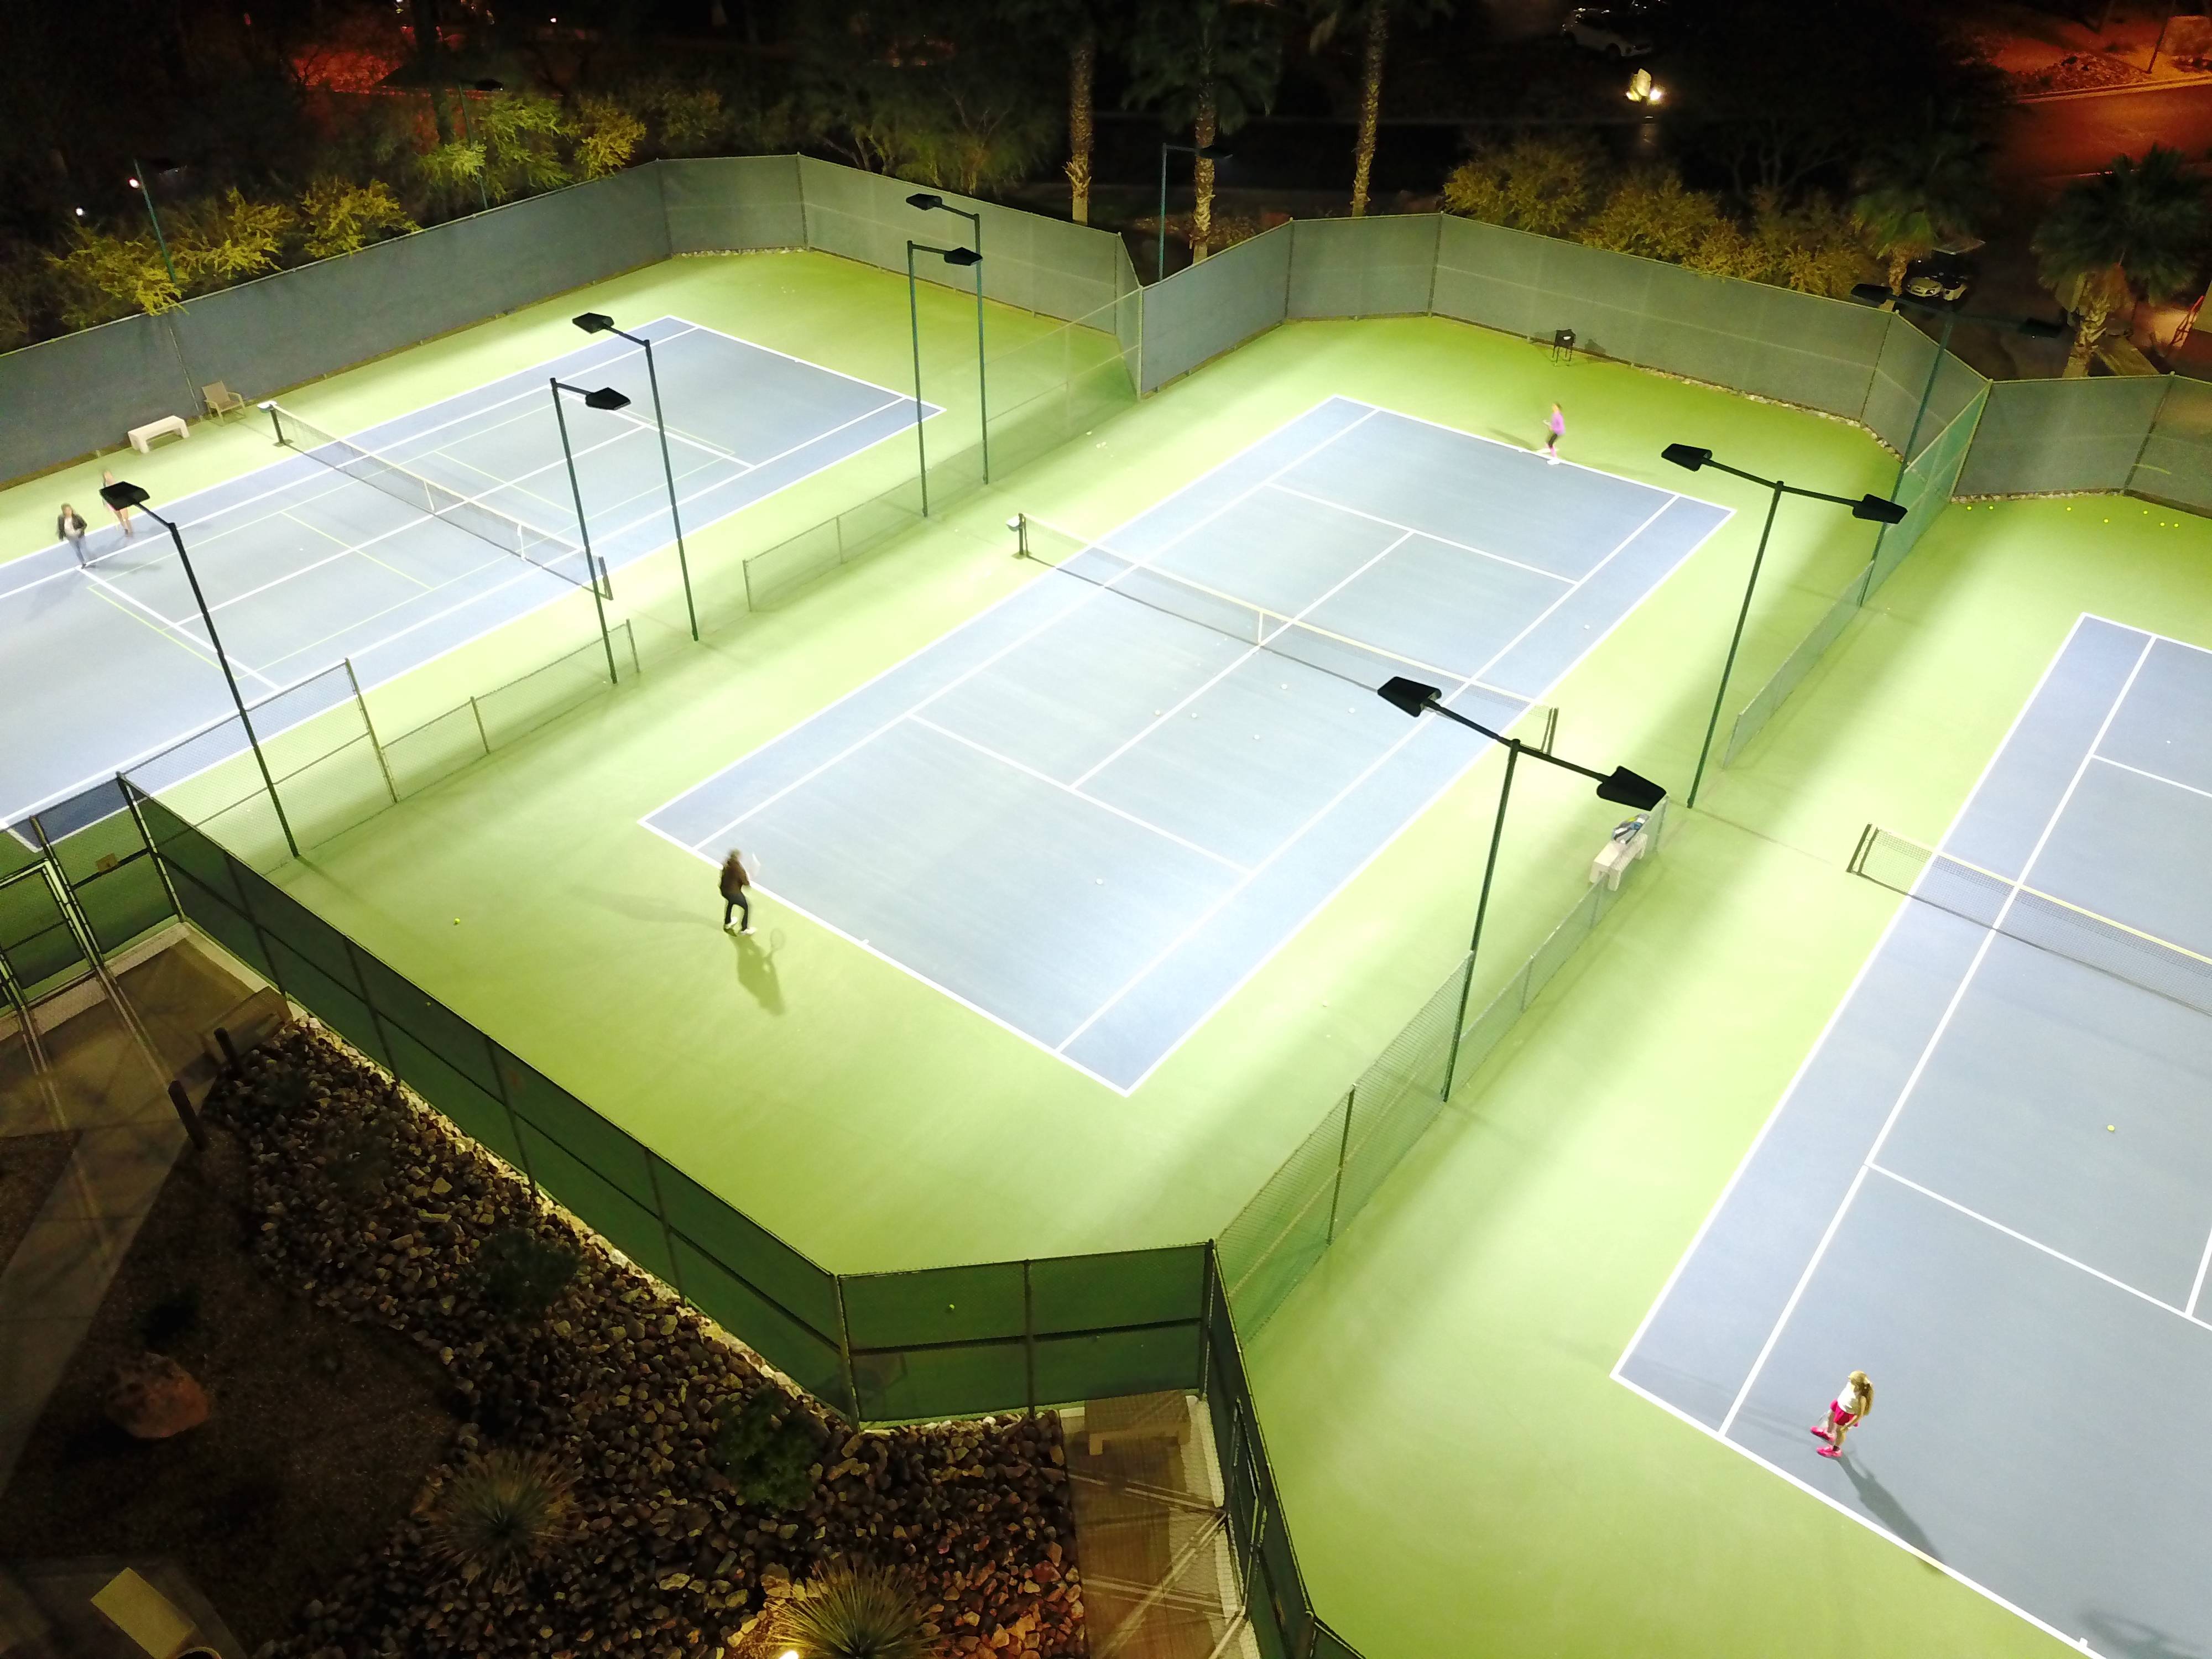 Welches Produkt sollte Ihr Tennisplatz für die beste Beleuchtung verwenden?